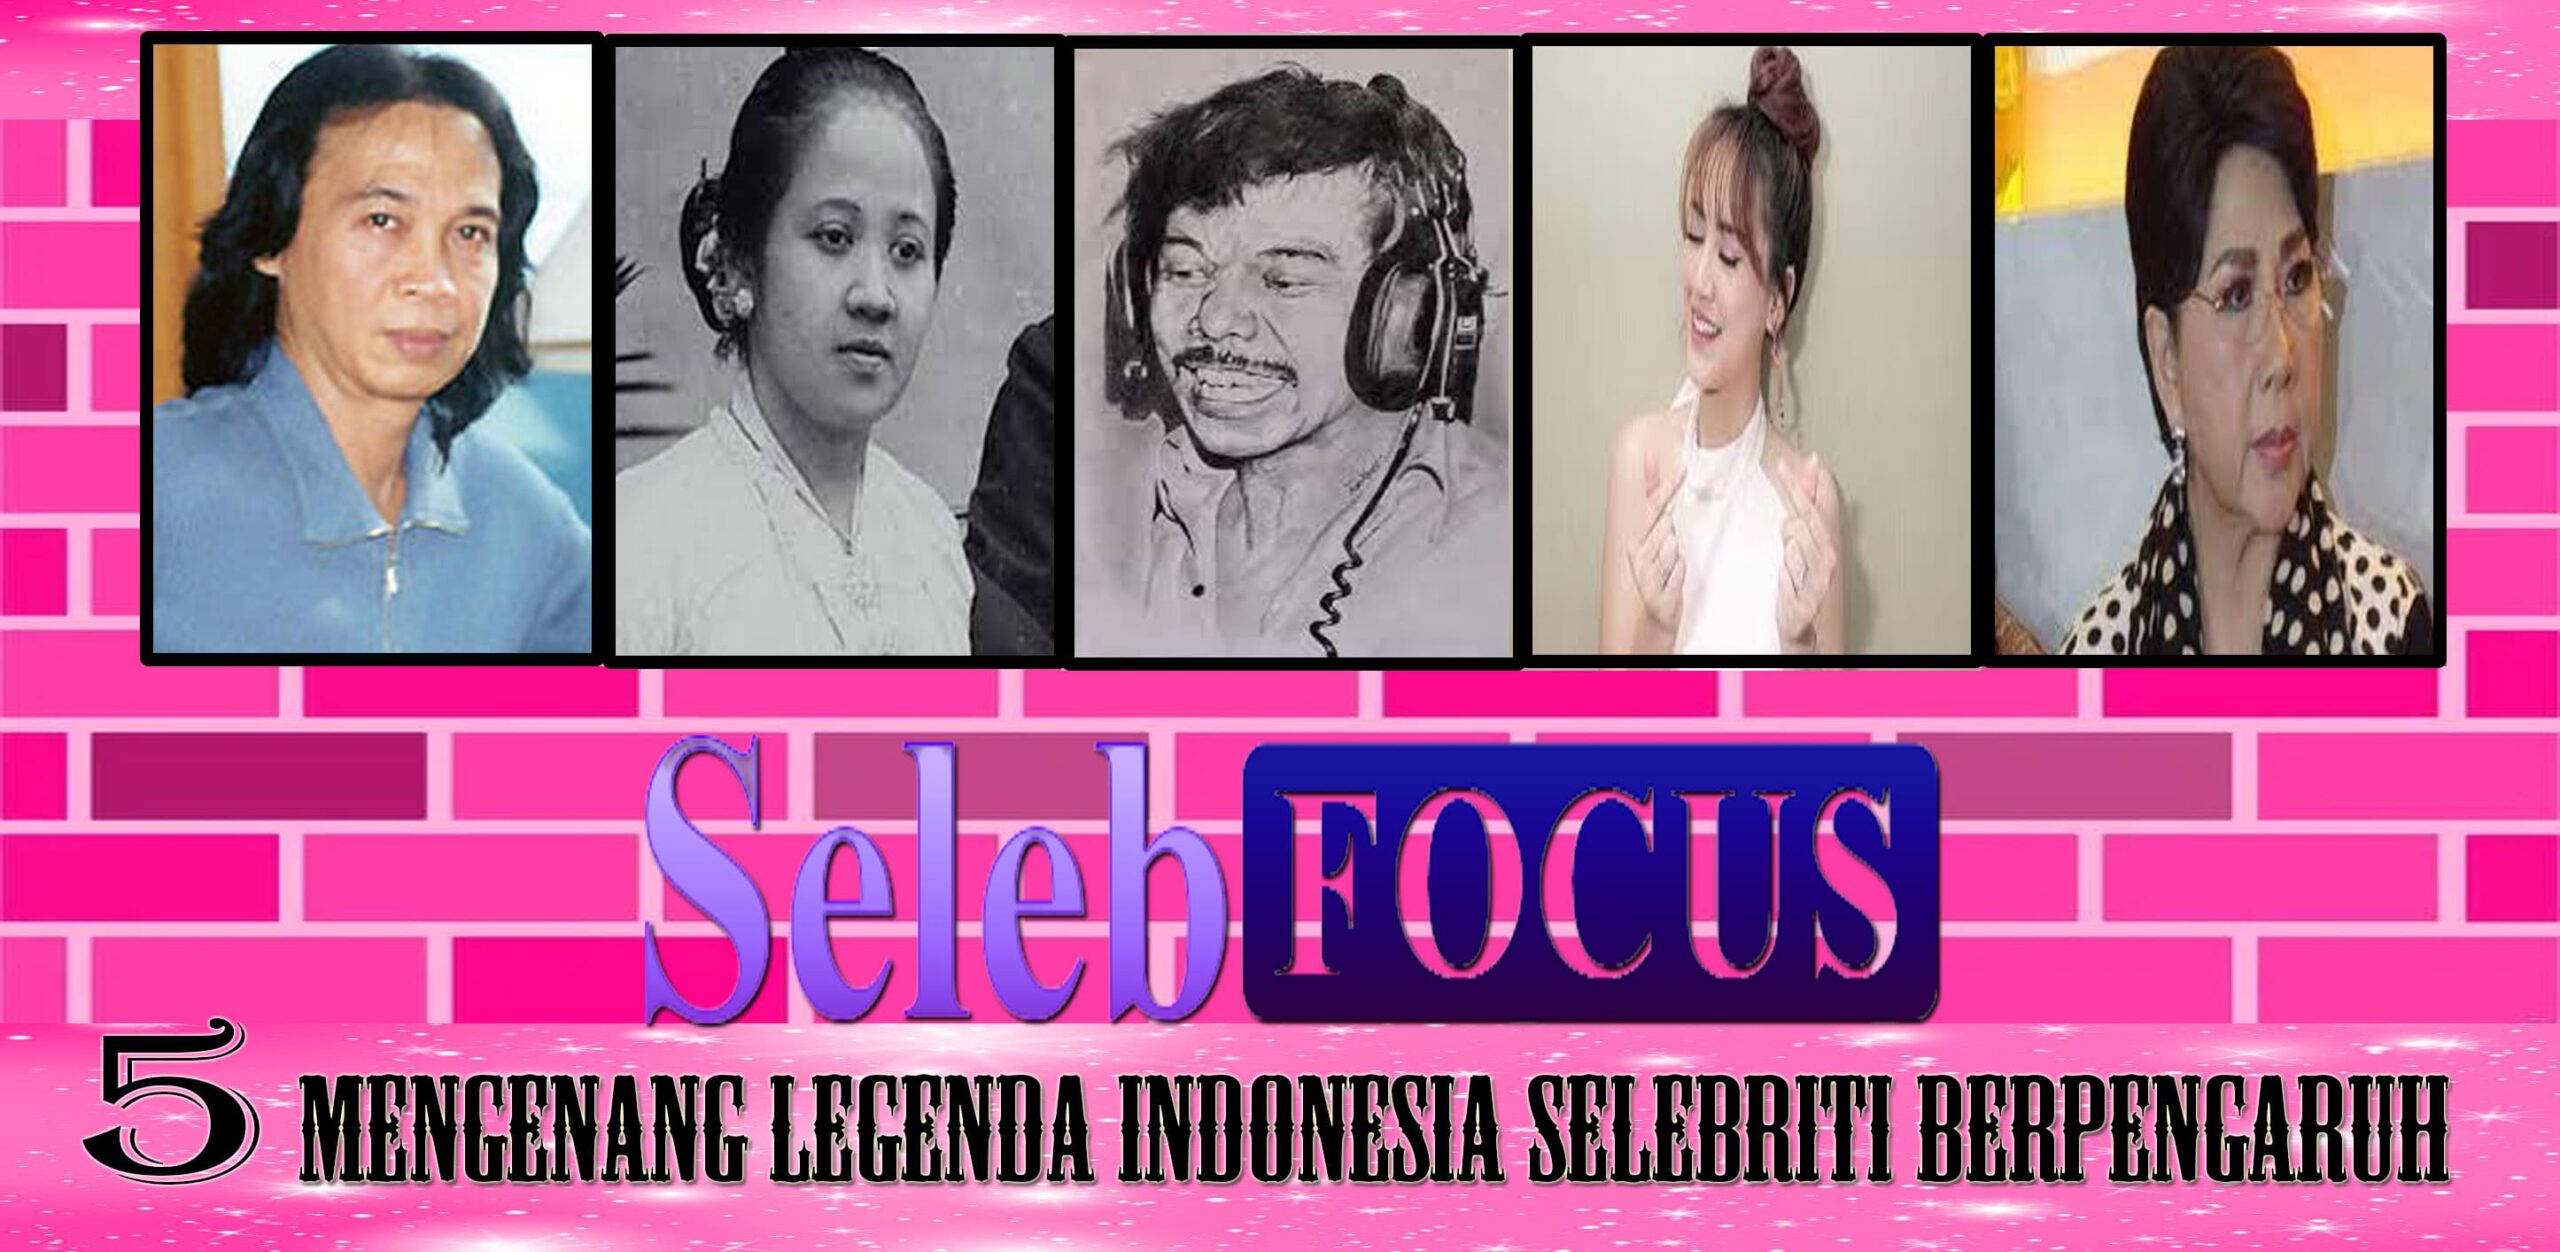 Mengenang Legenda Indonesia Selebriti Berpengaruh